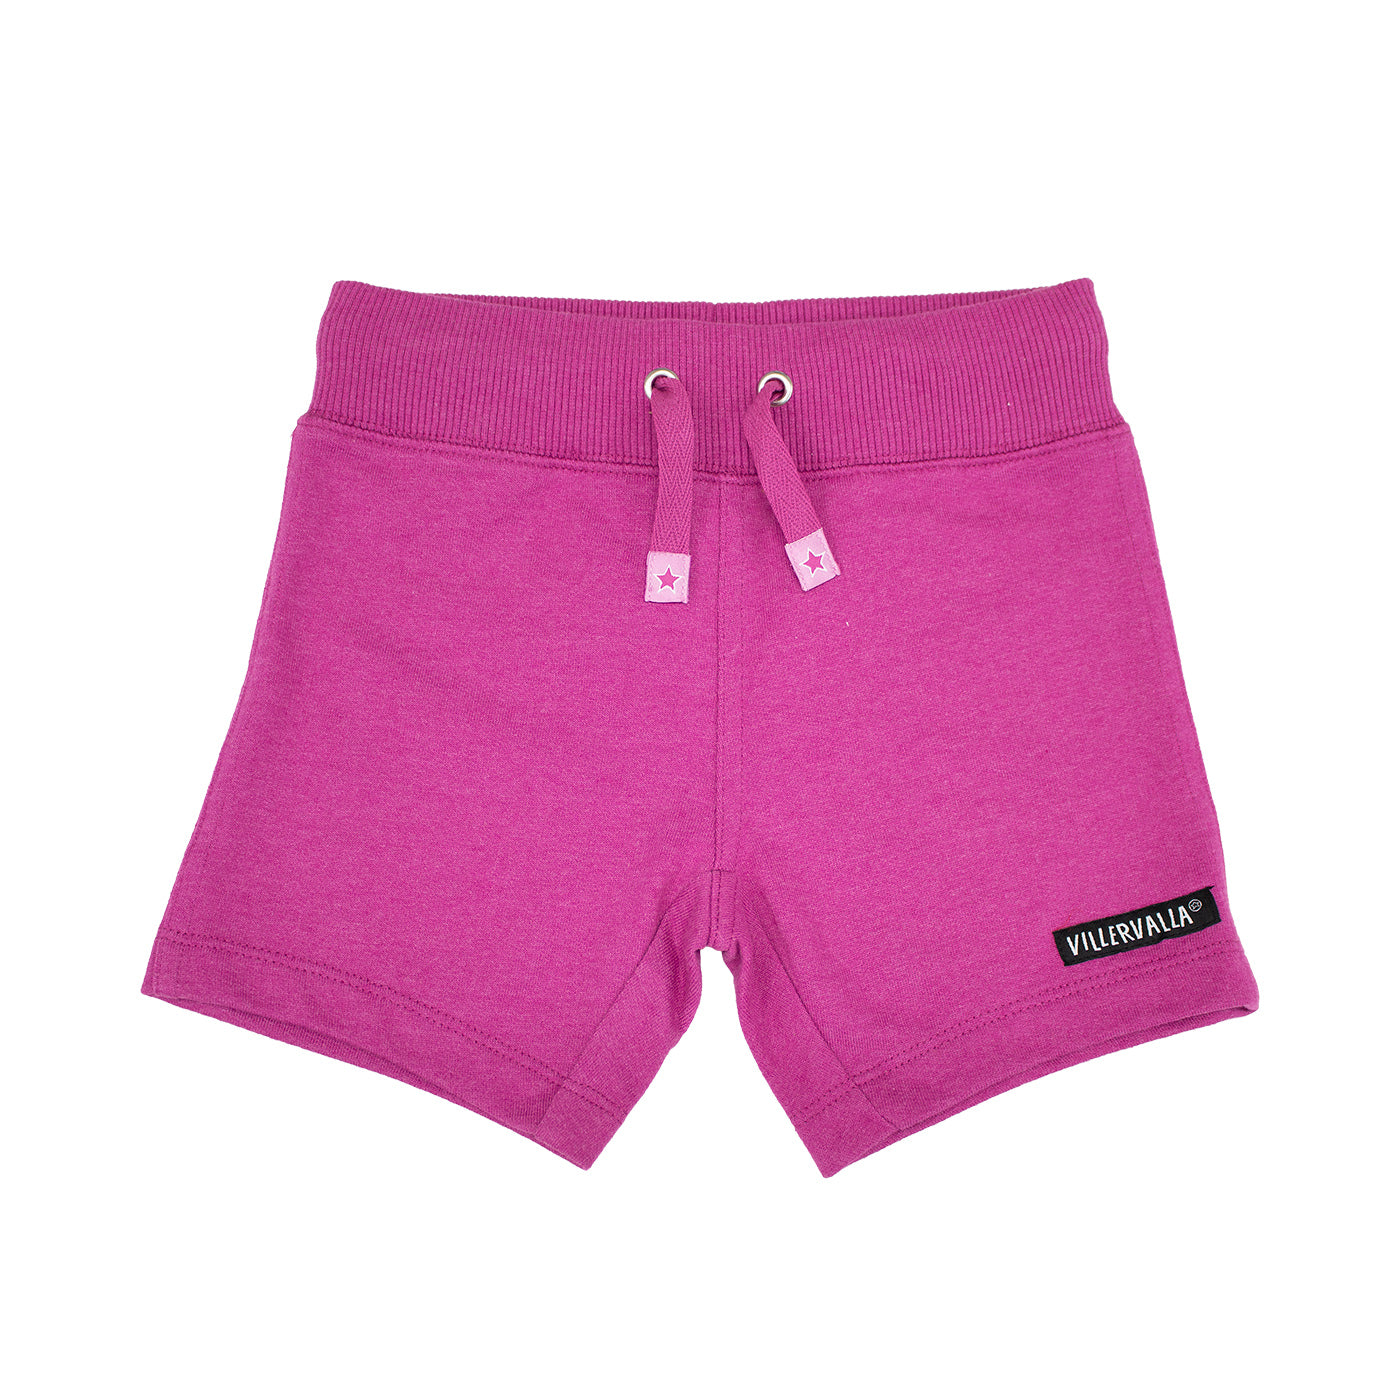 PRICE DROP * Villervalla - Basics - Relaxed Shorts - Raspberry ** LAST SZ 140cm